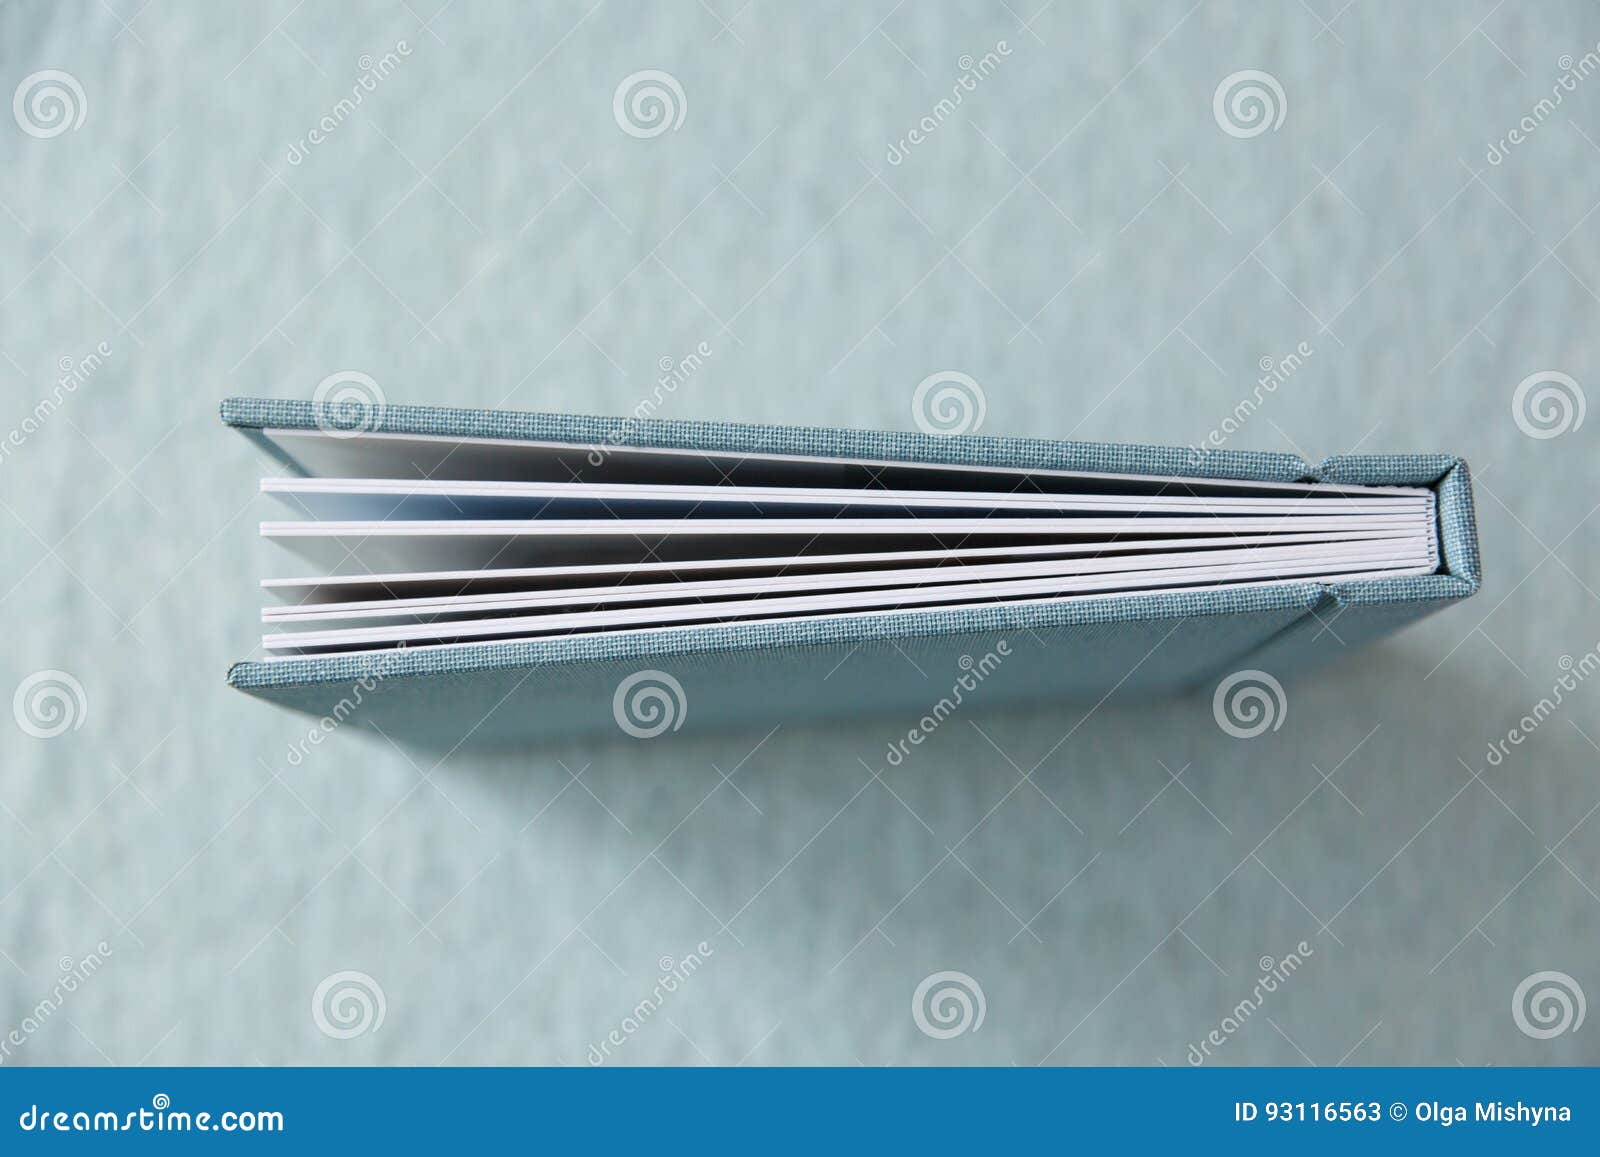 Blue Book with Fabric Cover Immagine Stock - Immagine di dizionario ...